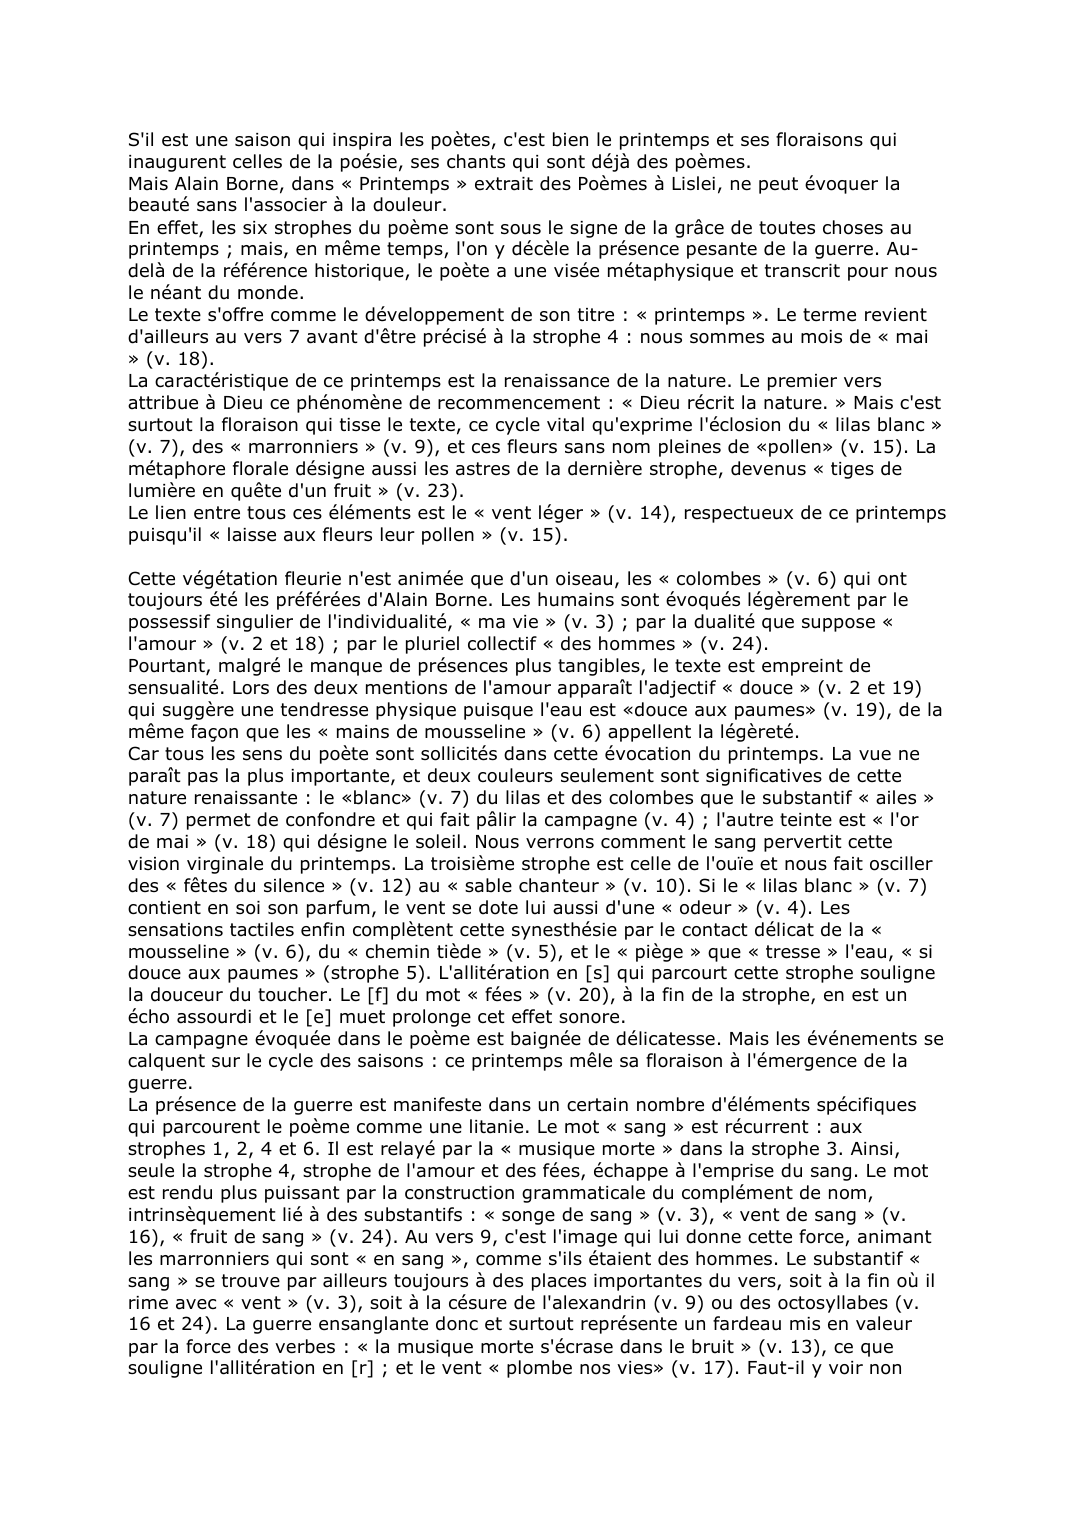 Prévisualisation du document Alain Borne, « Printemps » extrait des Poèmes à Lislei. Commentaire